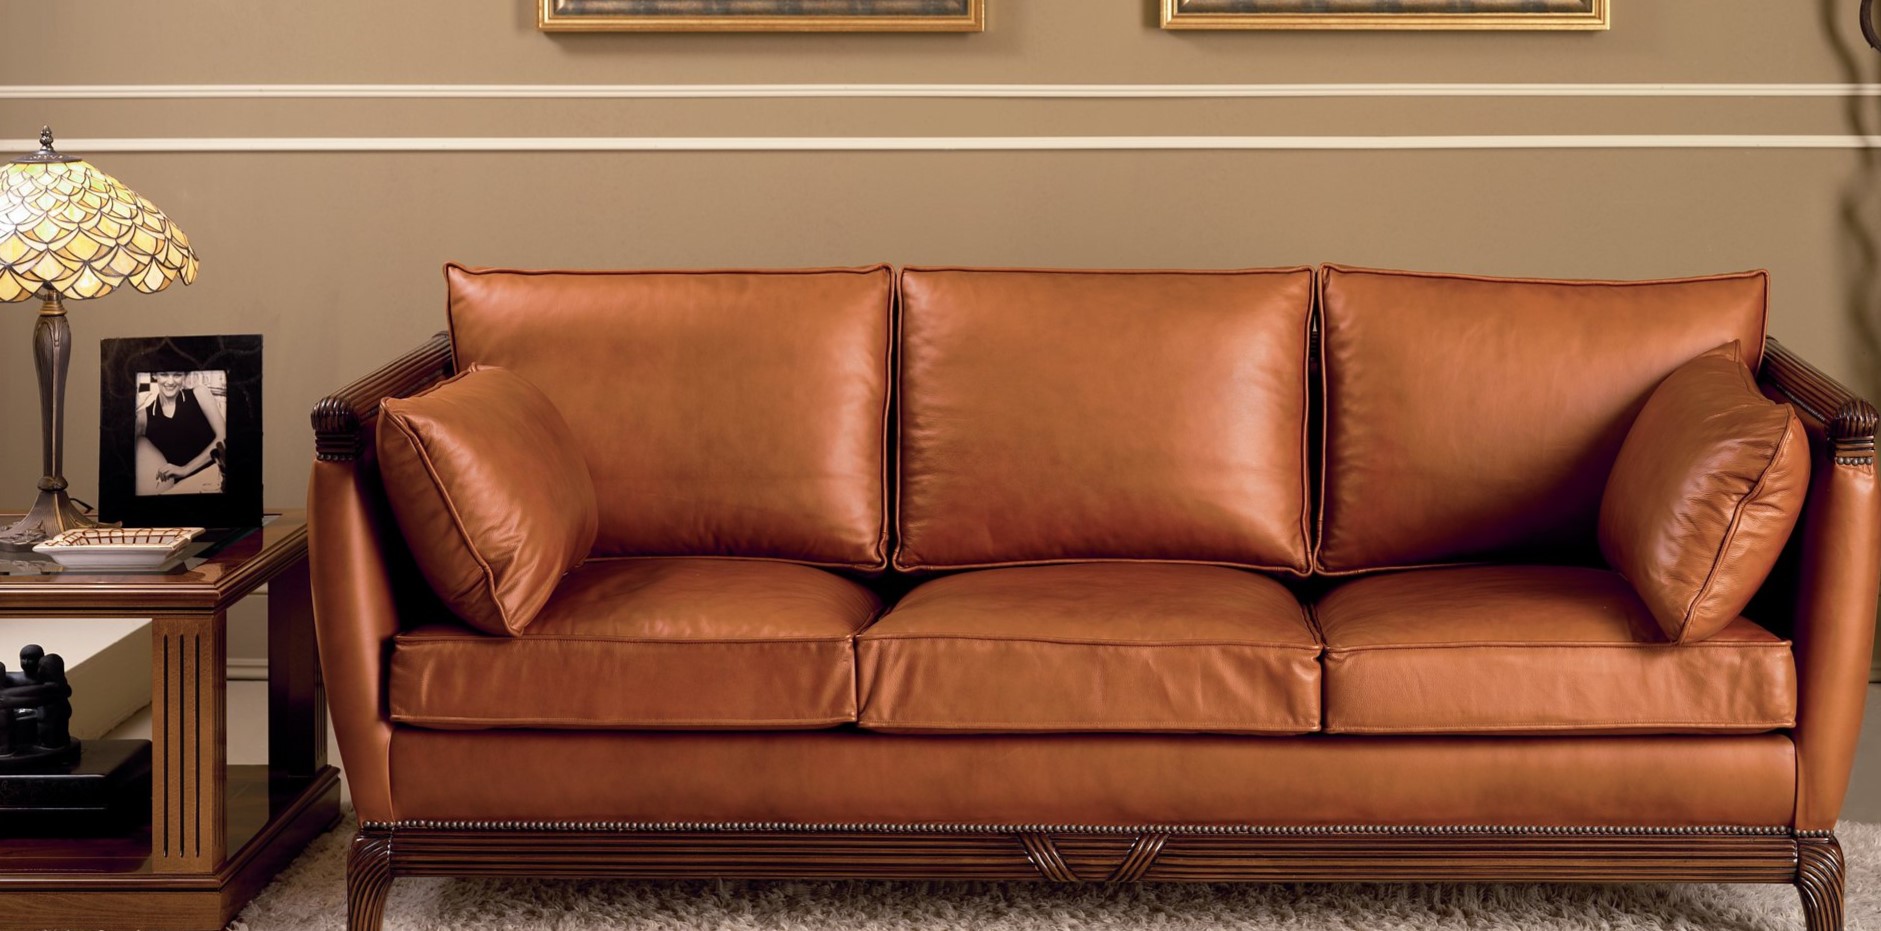 Кожаный диван с деревянными ножками поможет создать стильный интерьер в приемной